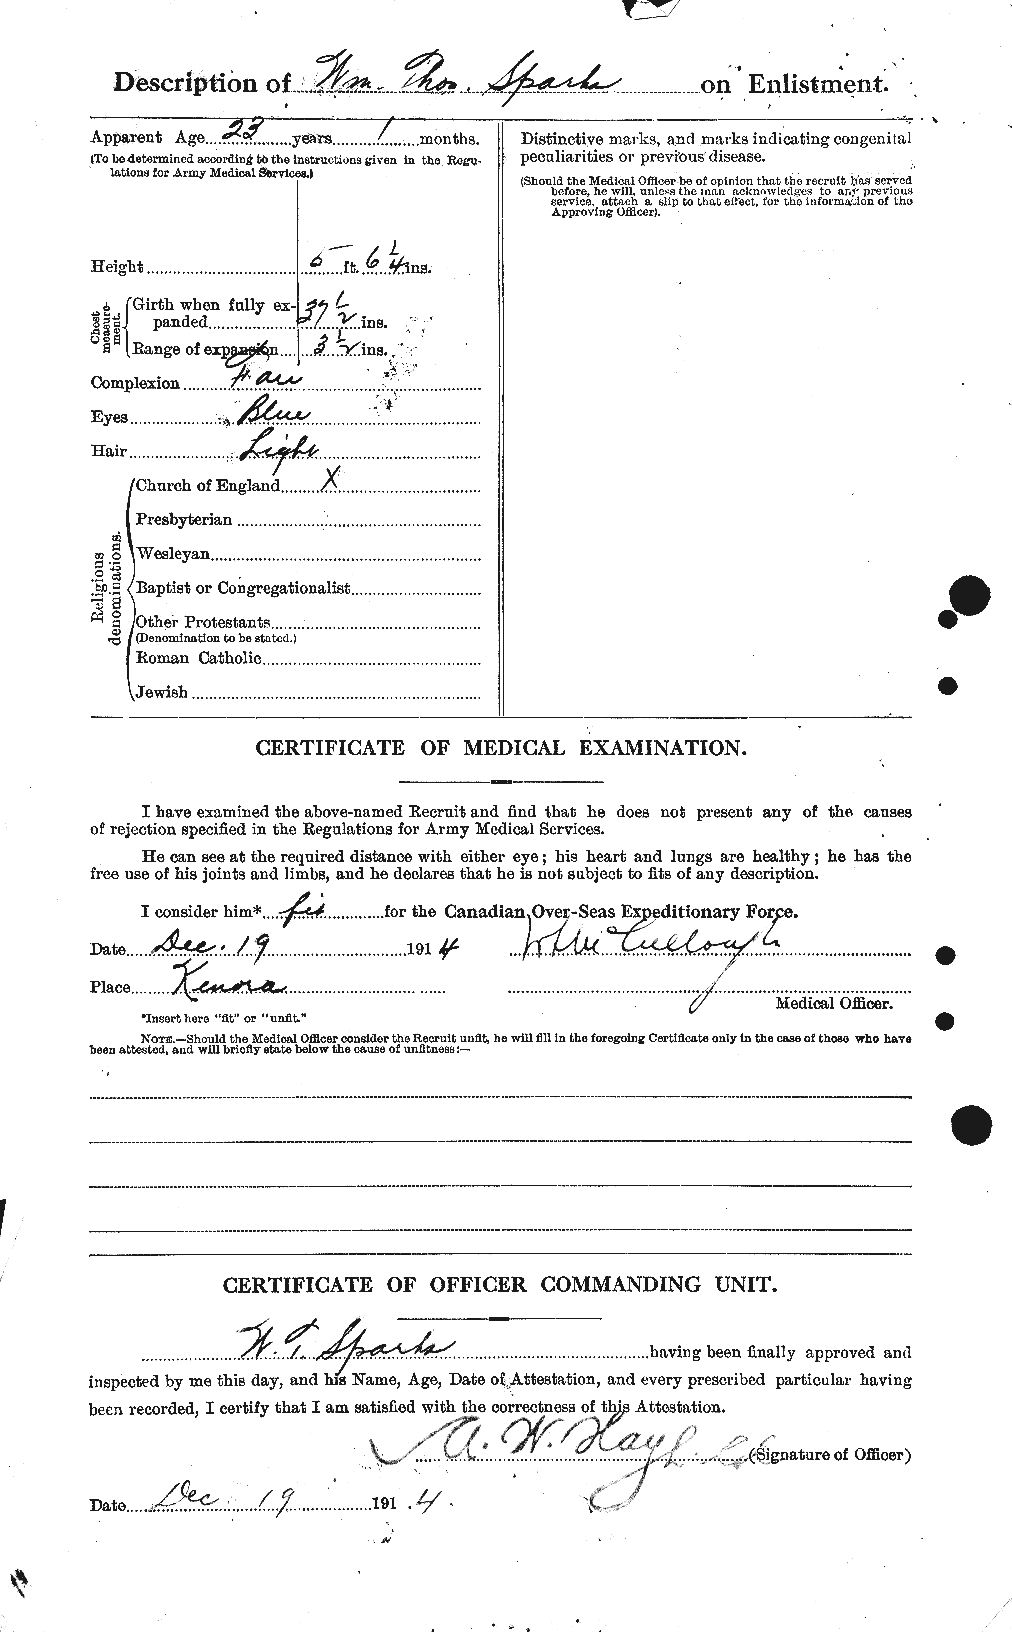 Dossiers du Personnel de la Première Guerre mondiale - CEC 622691b